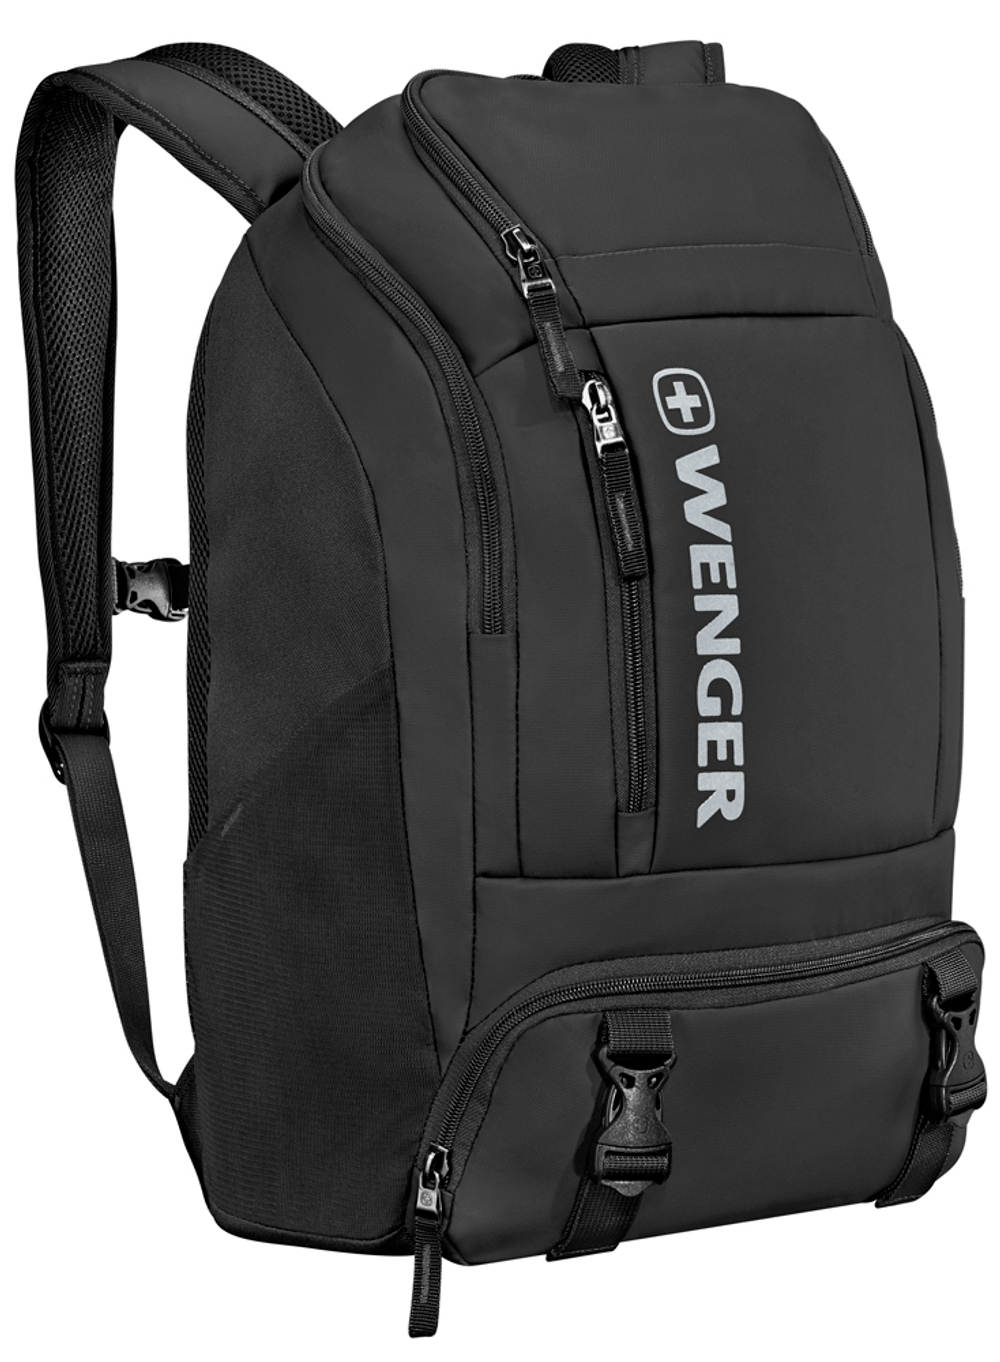 Рюкзак для активного отдыха чёрный 28л XC Wynd с карманом для полноразмерных наушников, карманом для мокрых вещей, водоотталкивающим покрытием и светоотражающим логотипом WENGER 610169